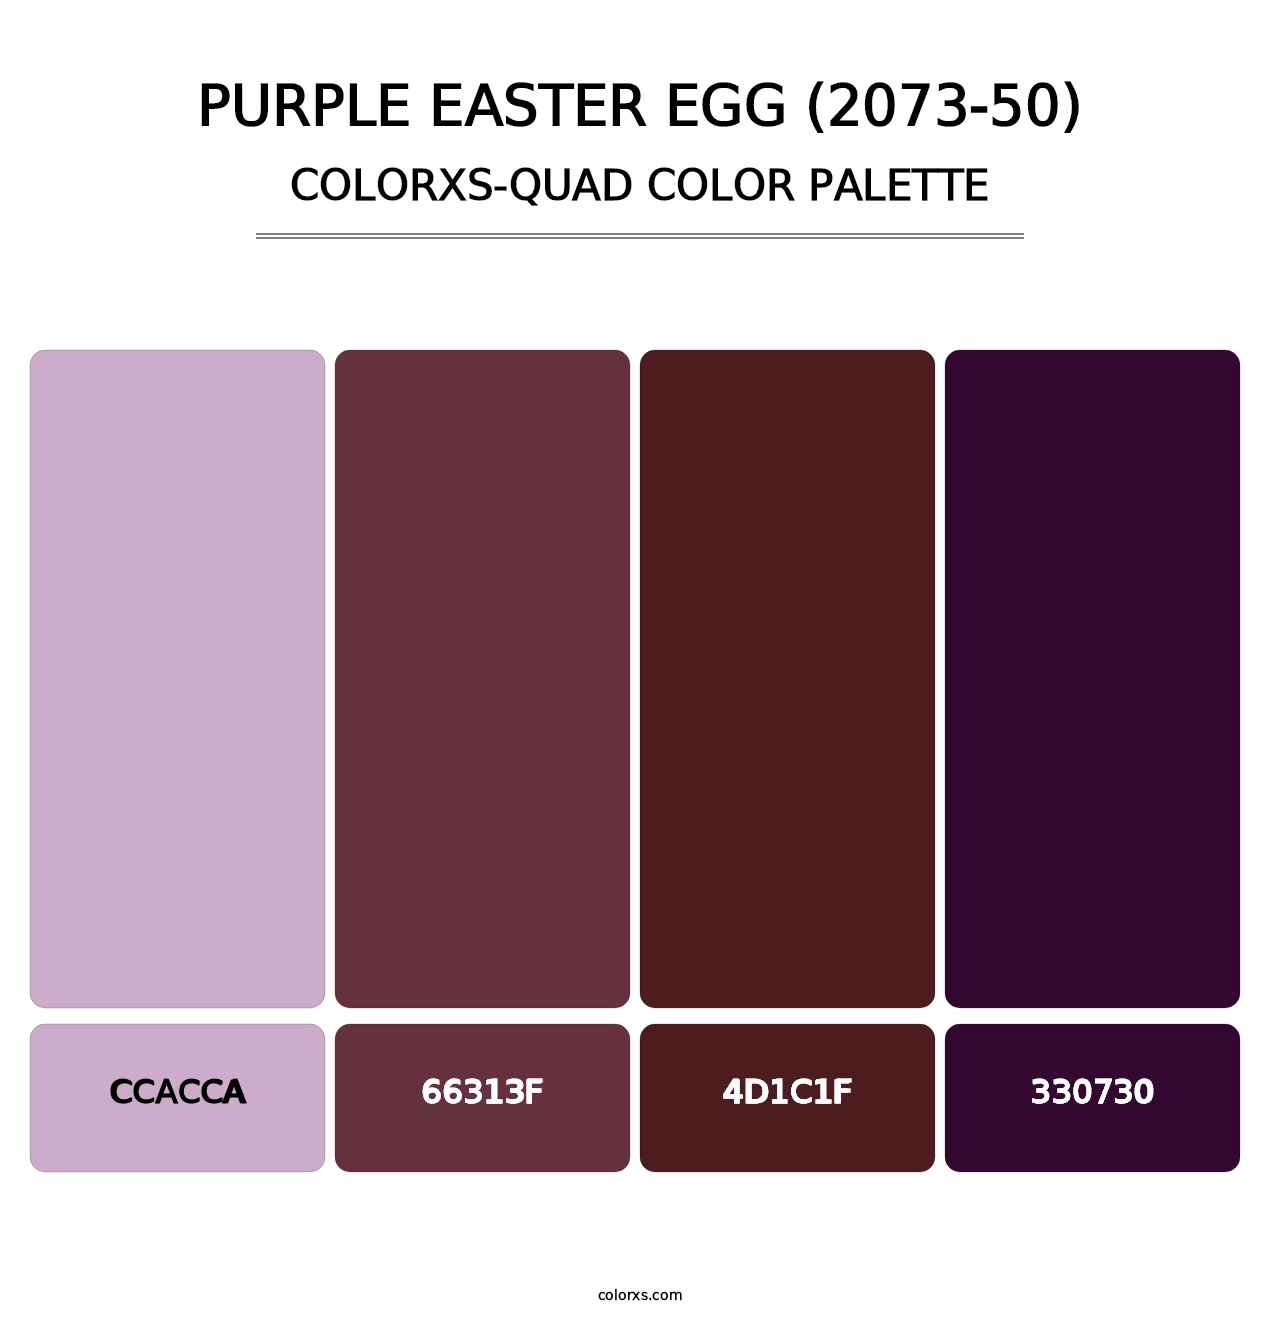 Purple Easter Egg (2073-50) - Colorxs Quad Palette